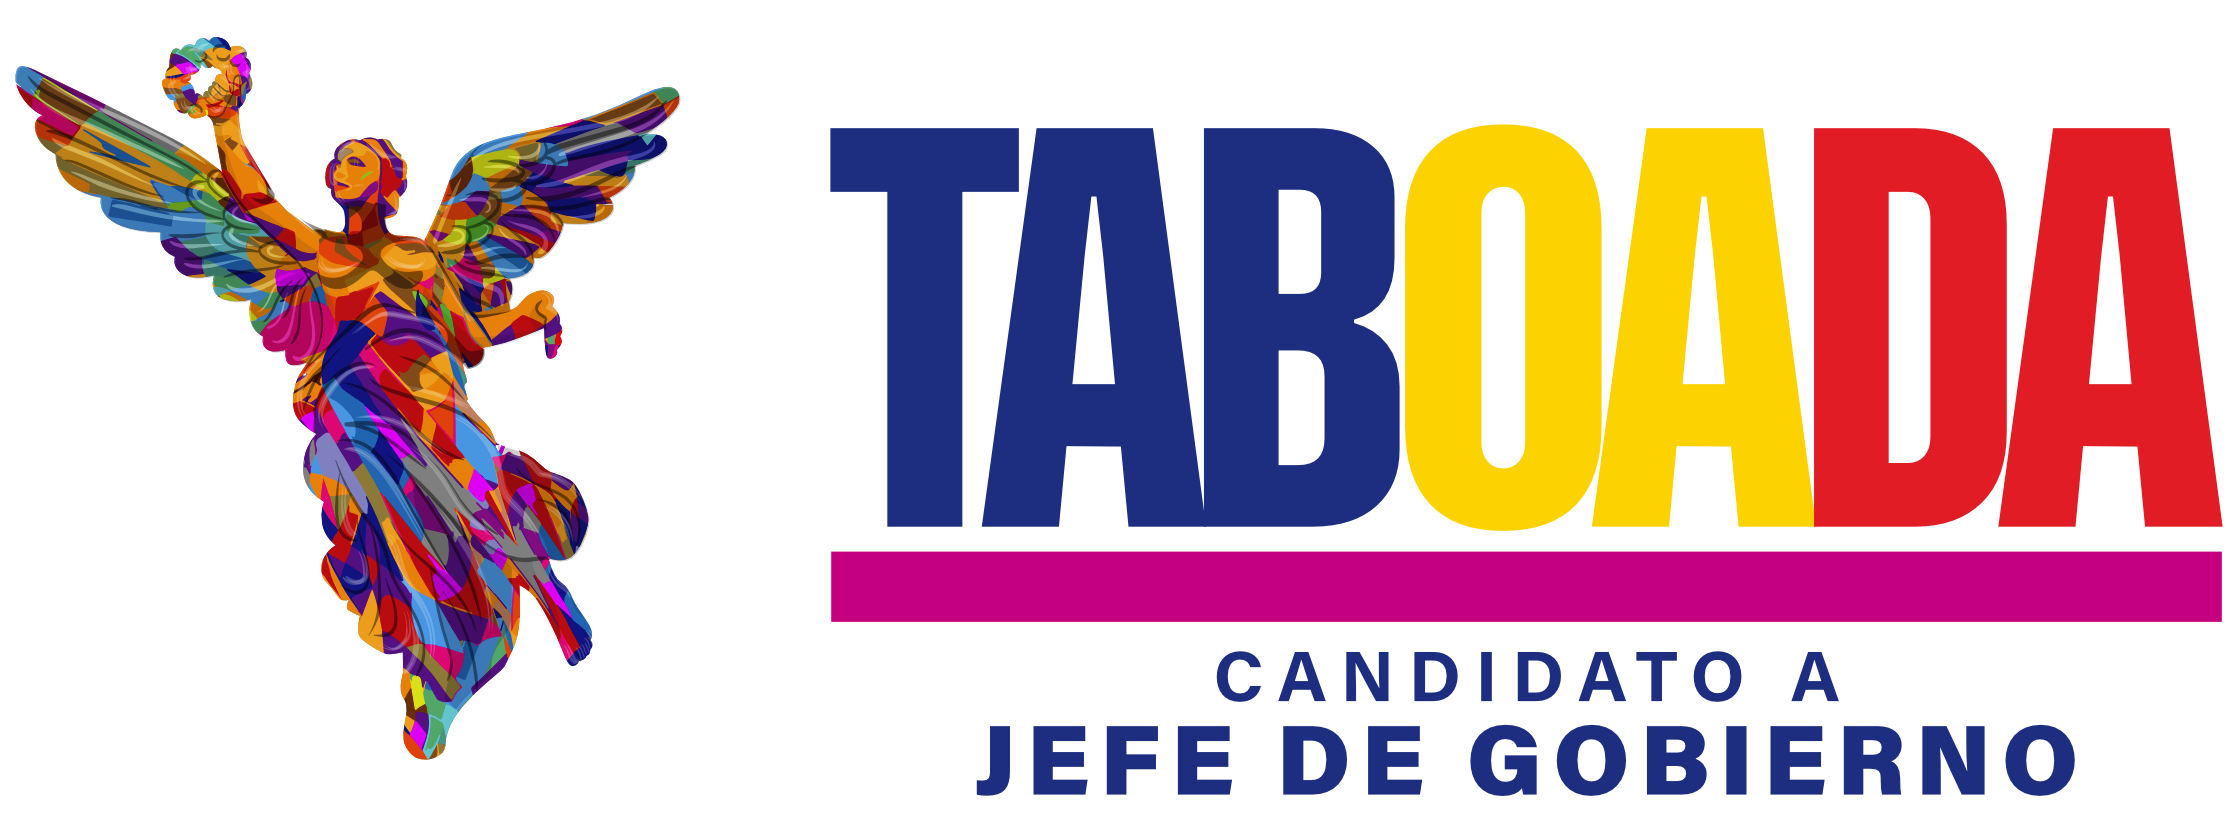 Santiago Taboada